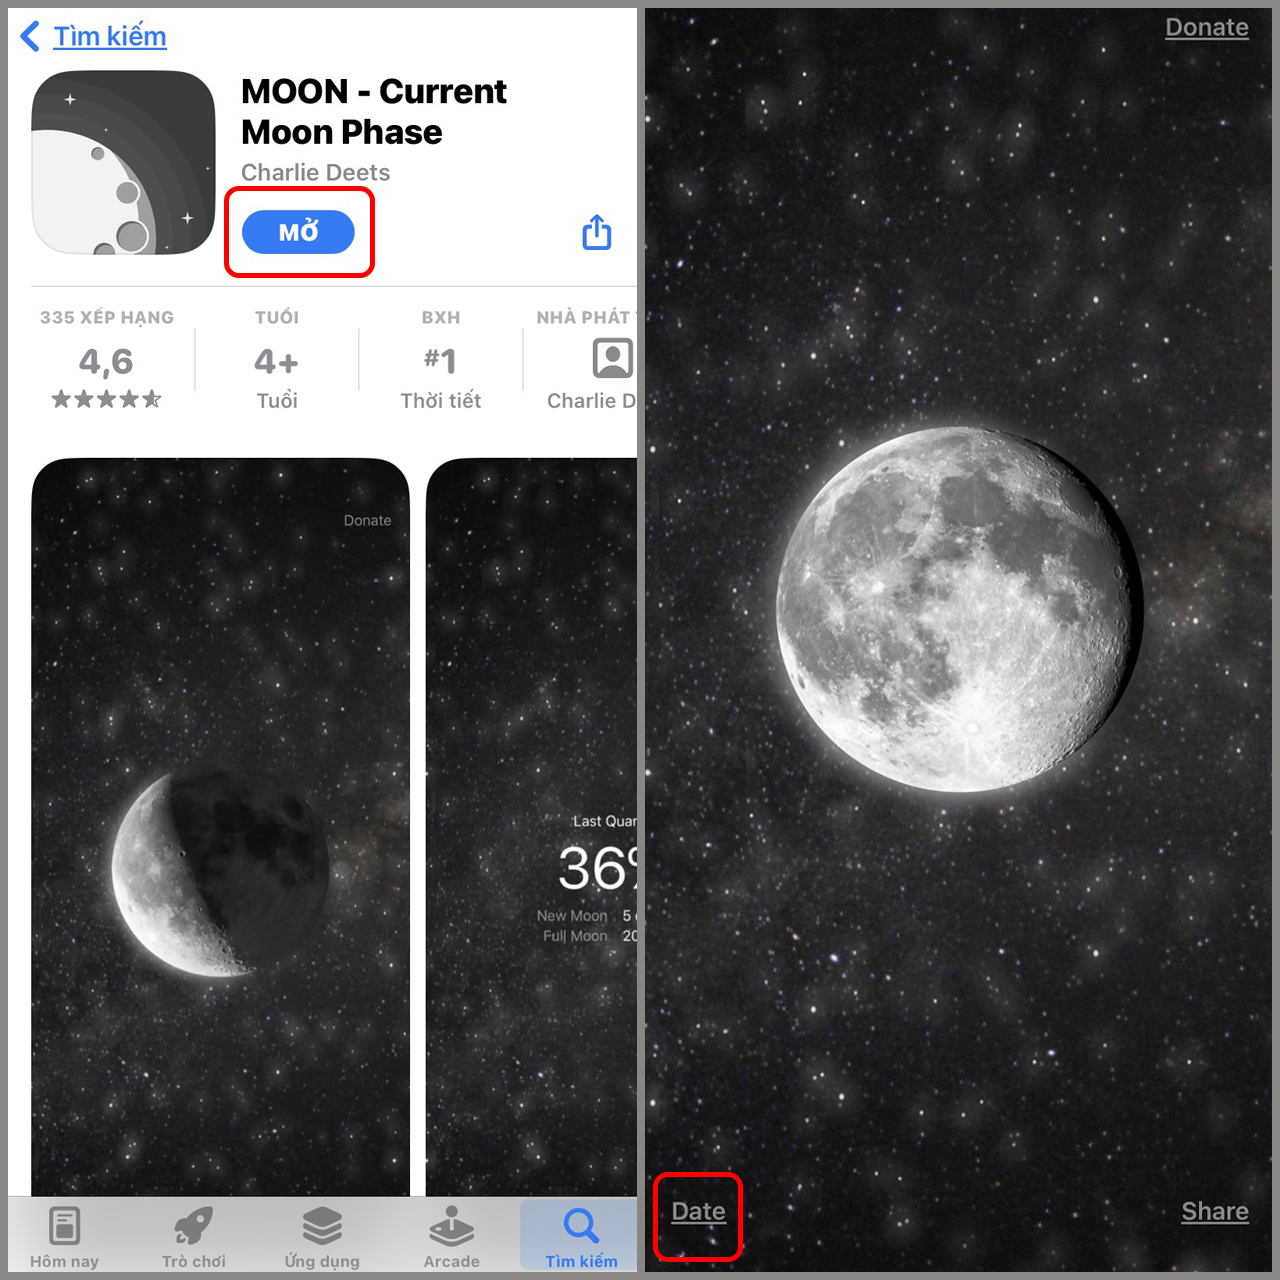 Cách xem mặt trăng theo ngày sinh bằng máy tính điện thoại 2022